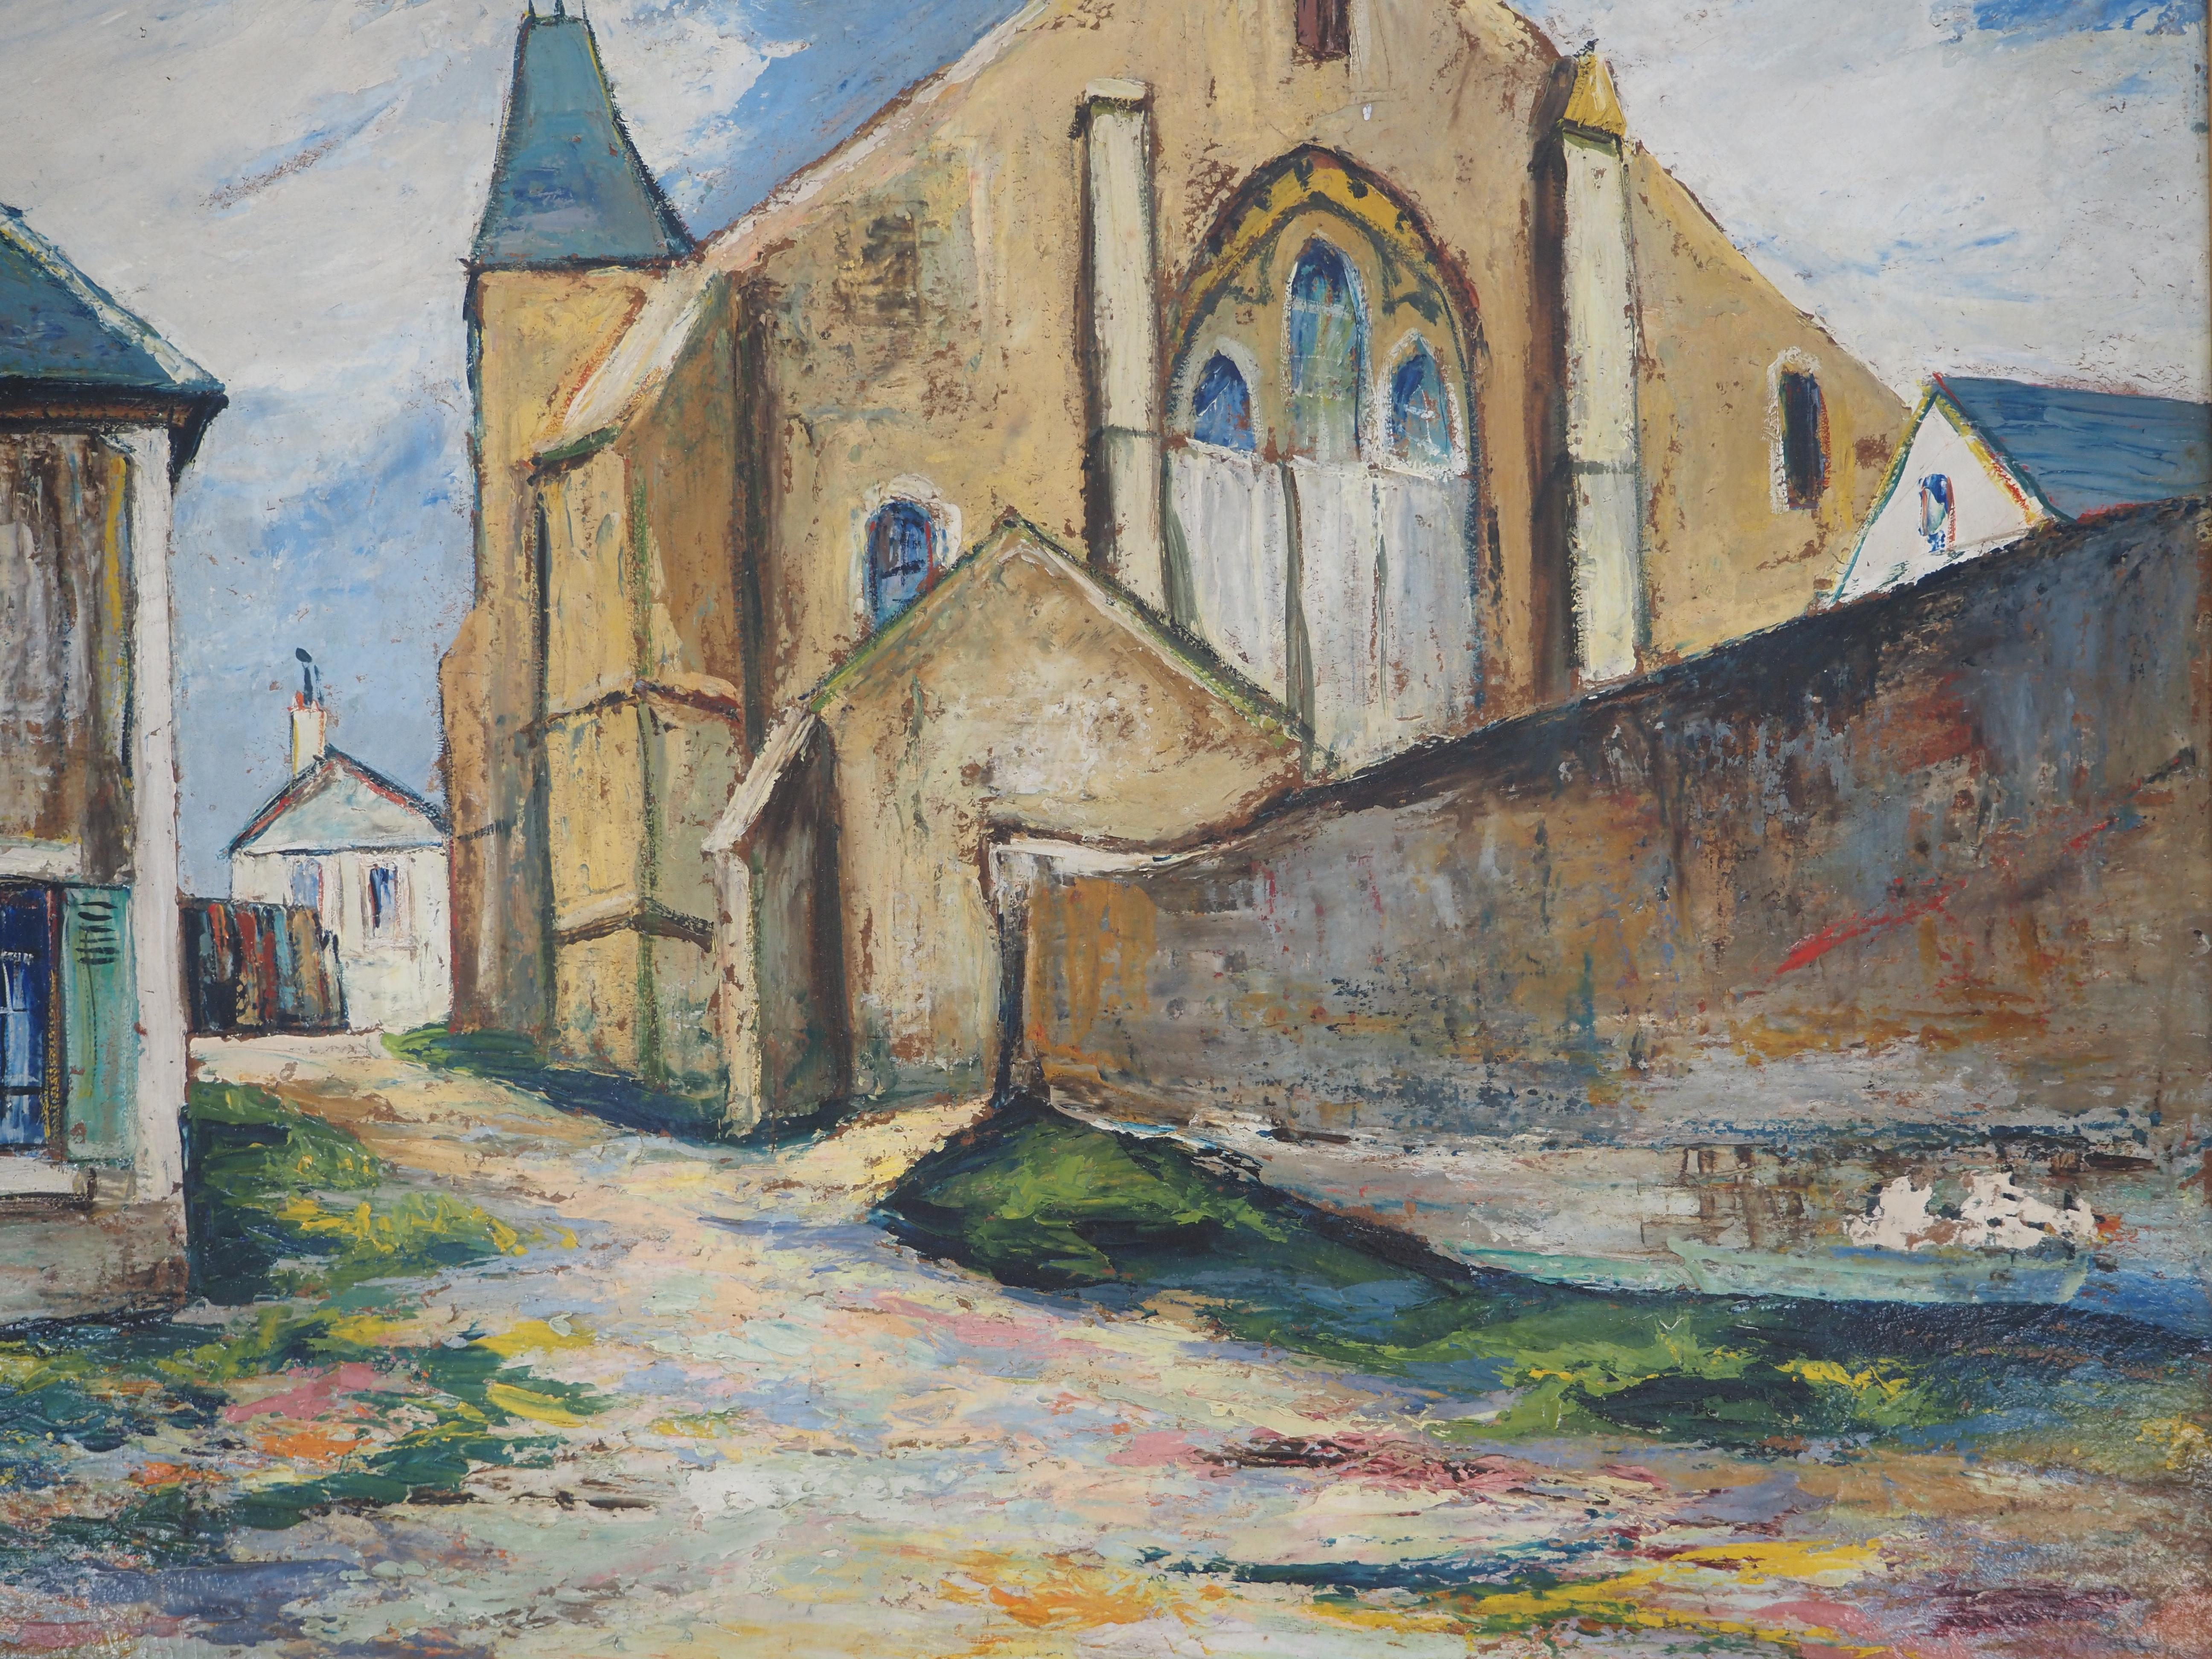 Elisée MACLET (1881-1962)
Normandie : Die alte römische Kirche, um 1915

Original Öl auf Platte
Signiert unten links
Auf Karton 50 x 65 cm (ca. 20 x 26 Zoll) 
Präsentiert in einem goldenen Rahmen, 69 x 84 cm (ca. 28 x 34 Zoll)

Sehr guter Zustand,